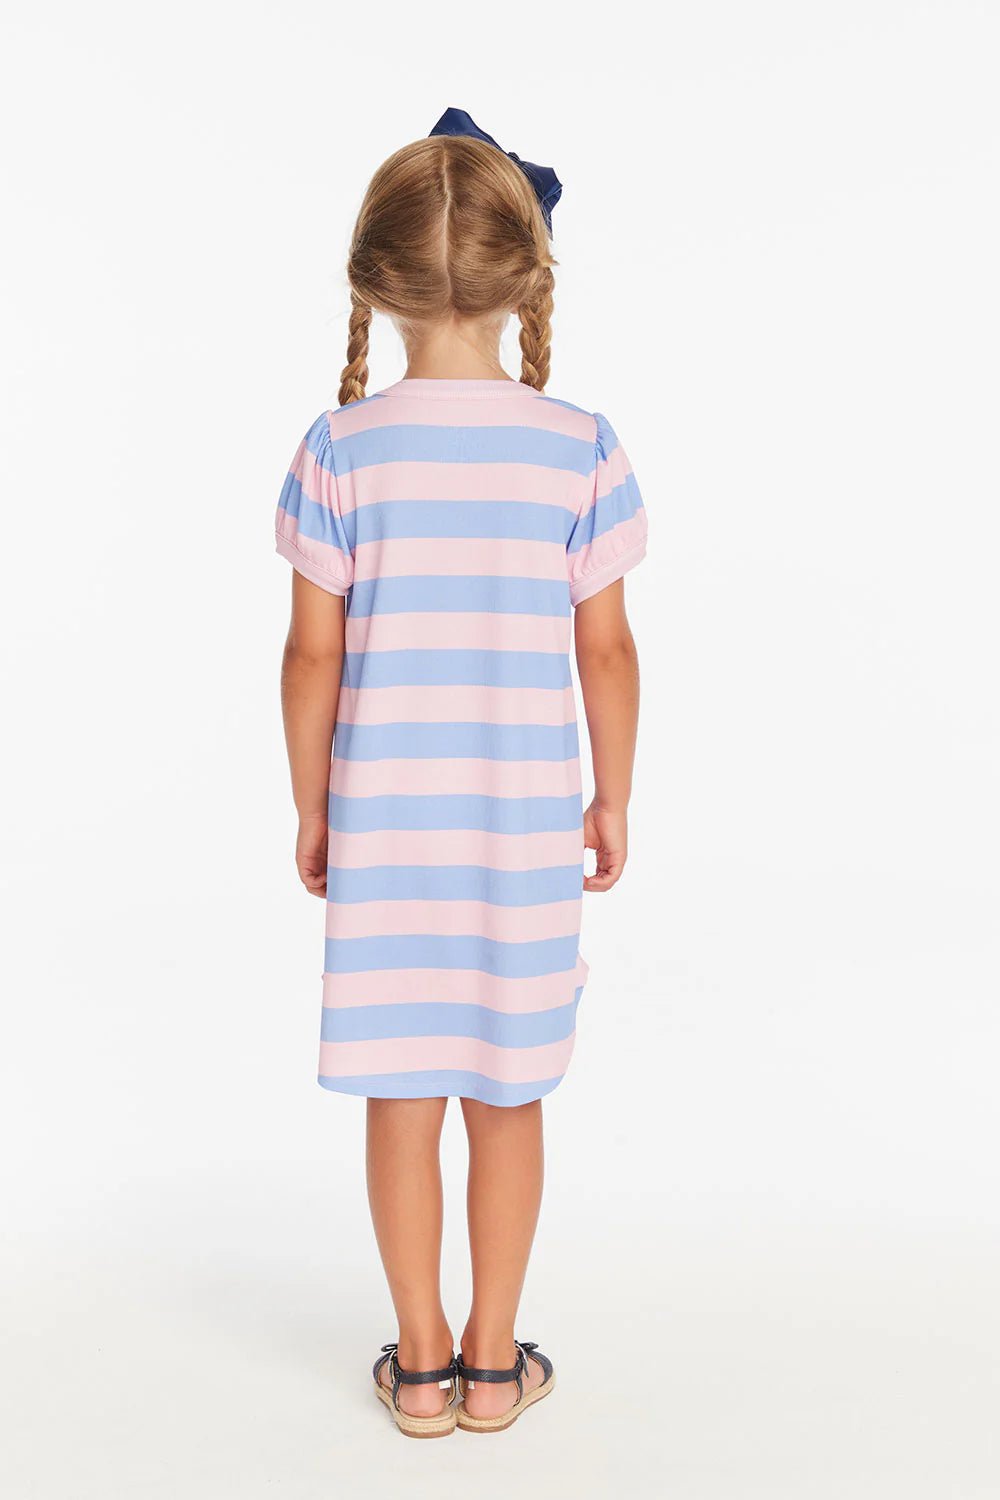 Chaser Kids Puff Sleeve Dress in Bubblegum Stripe - Estilo Boutique